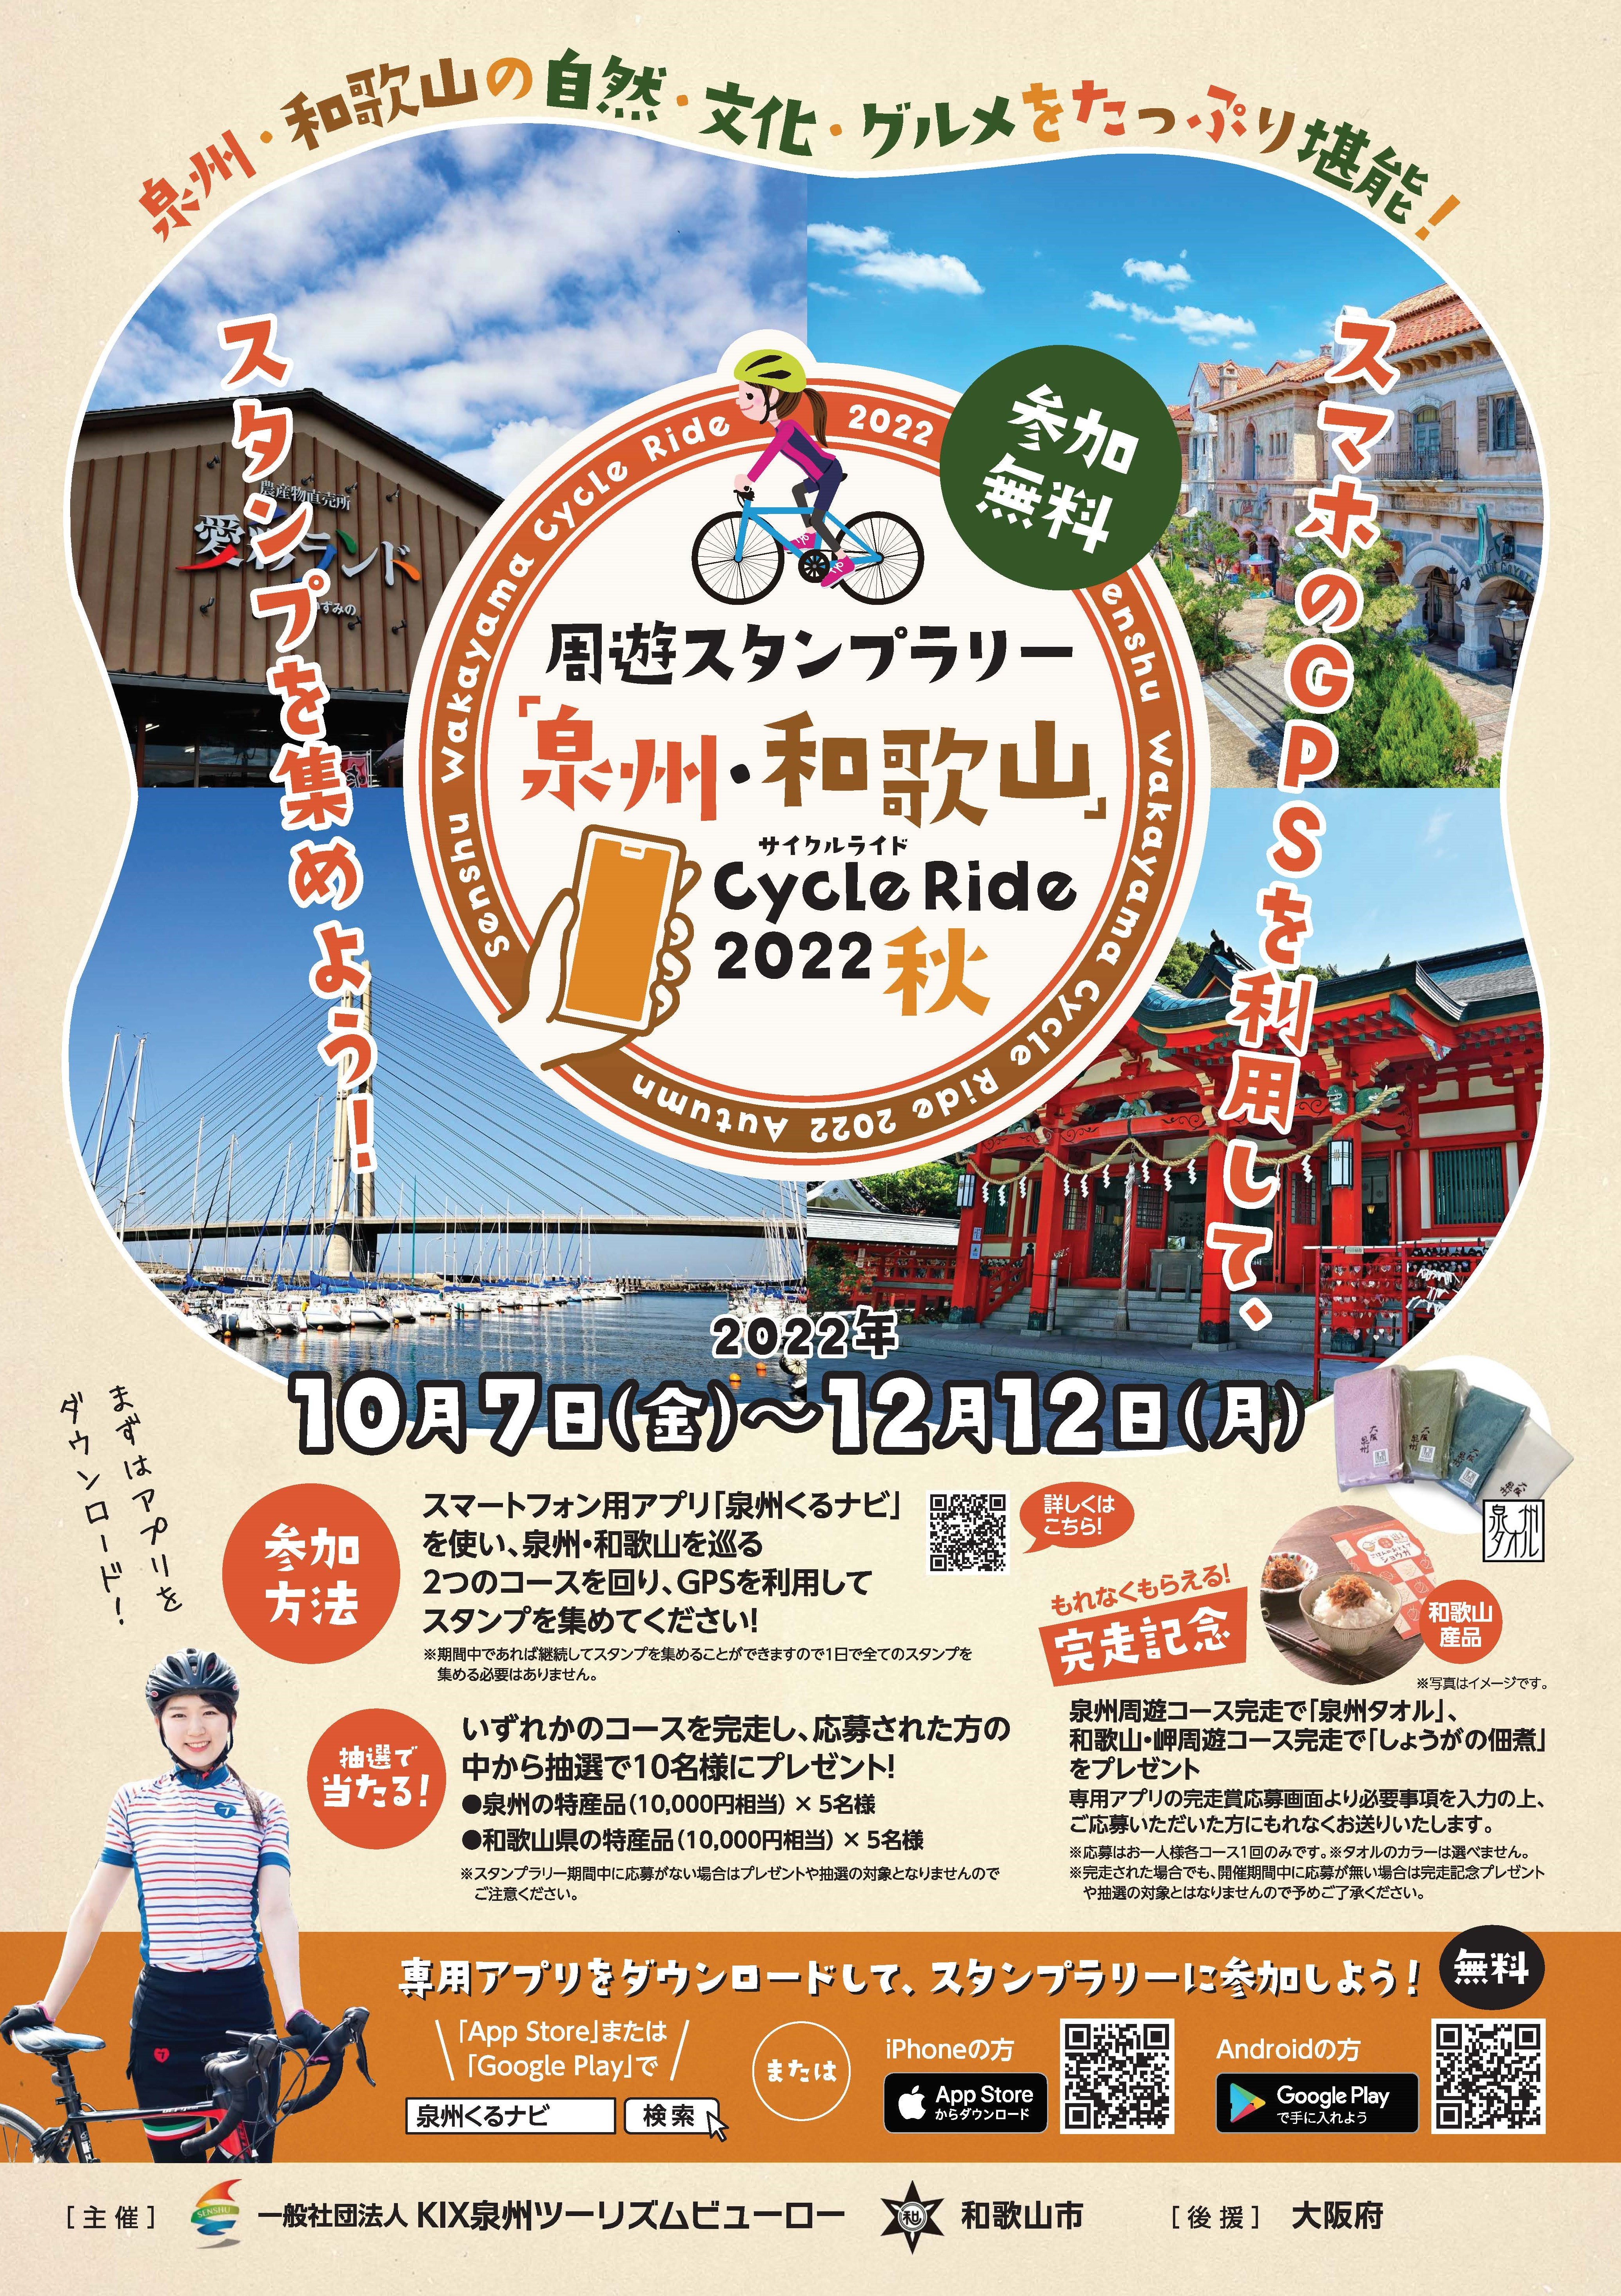 【大阪府】【和歌山県】『周遊スタンプラリー「大阪泉州・和歌山」CycleRide2022秋』を開催いたします！《PR》